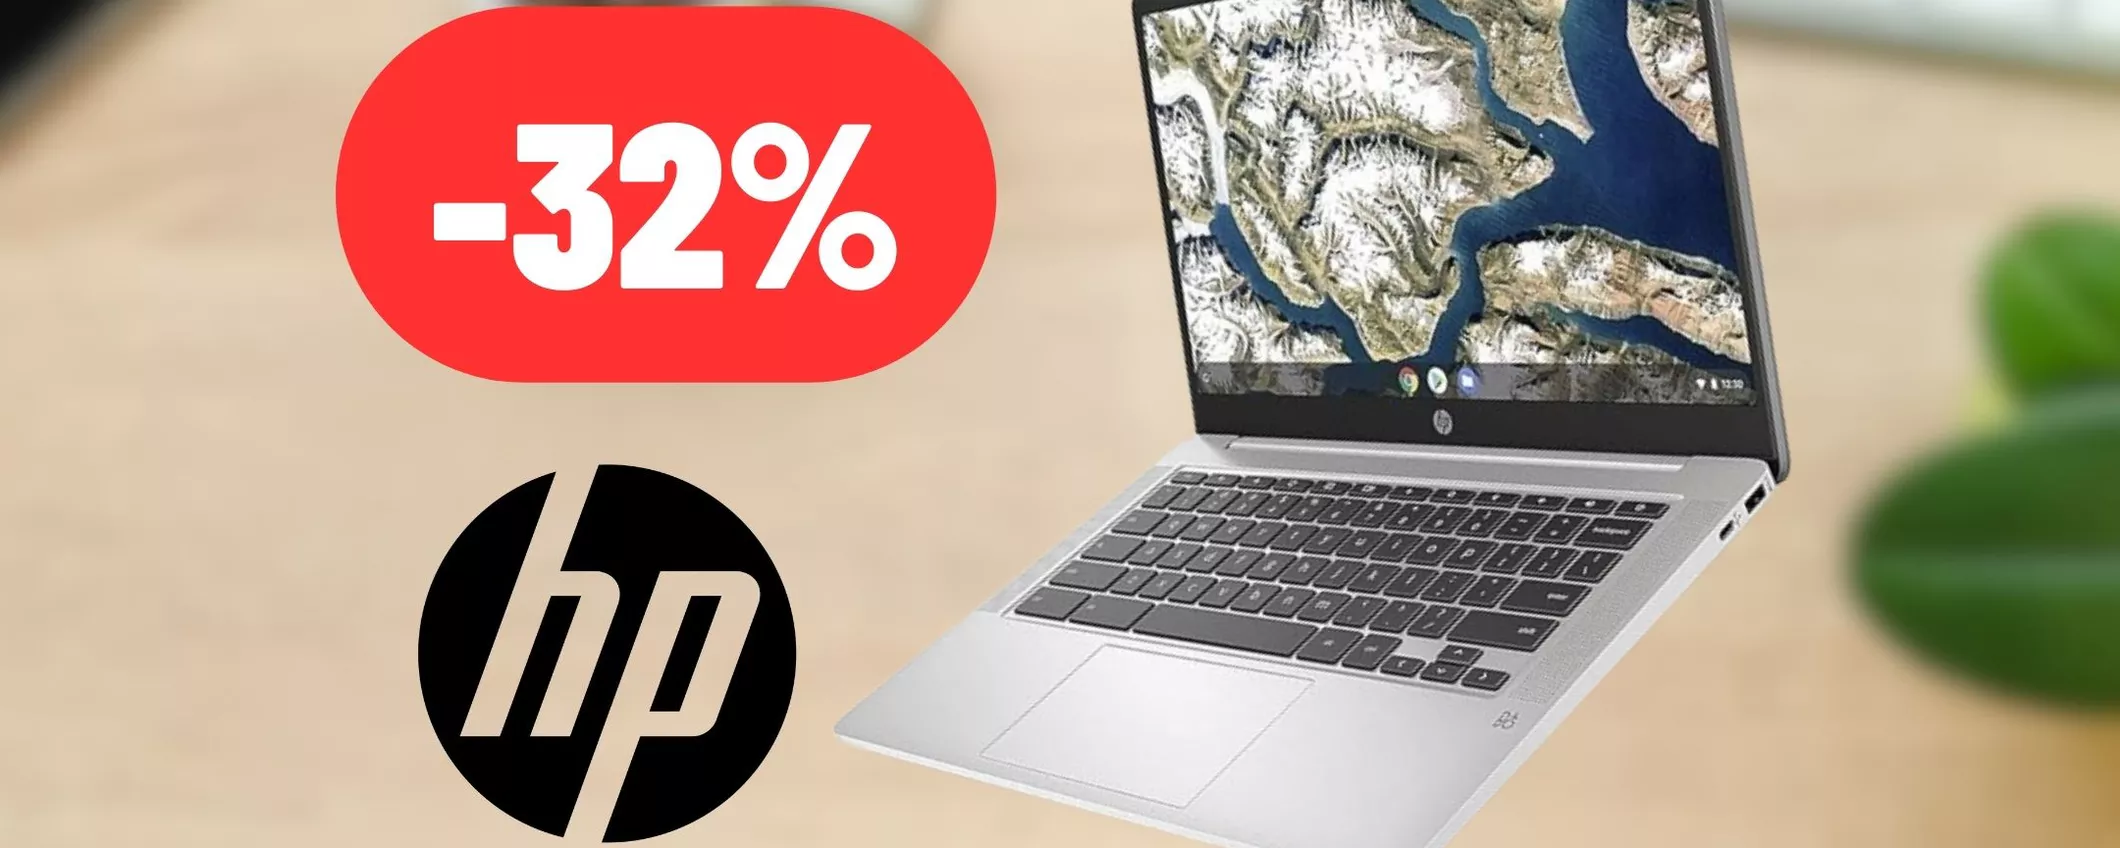 HP: Chromebook perfetto per continuare a lavorare anche al mare o in montagna (-32%)